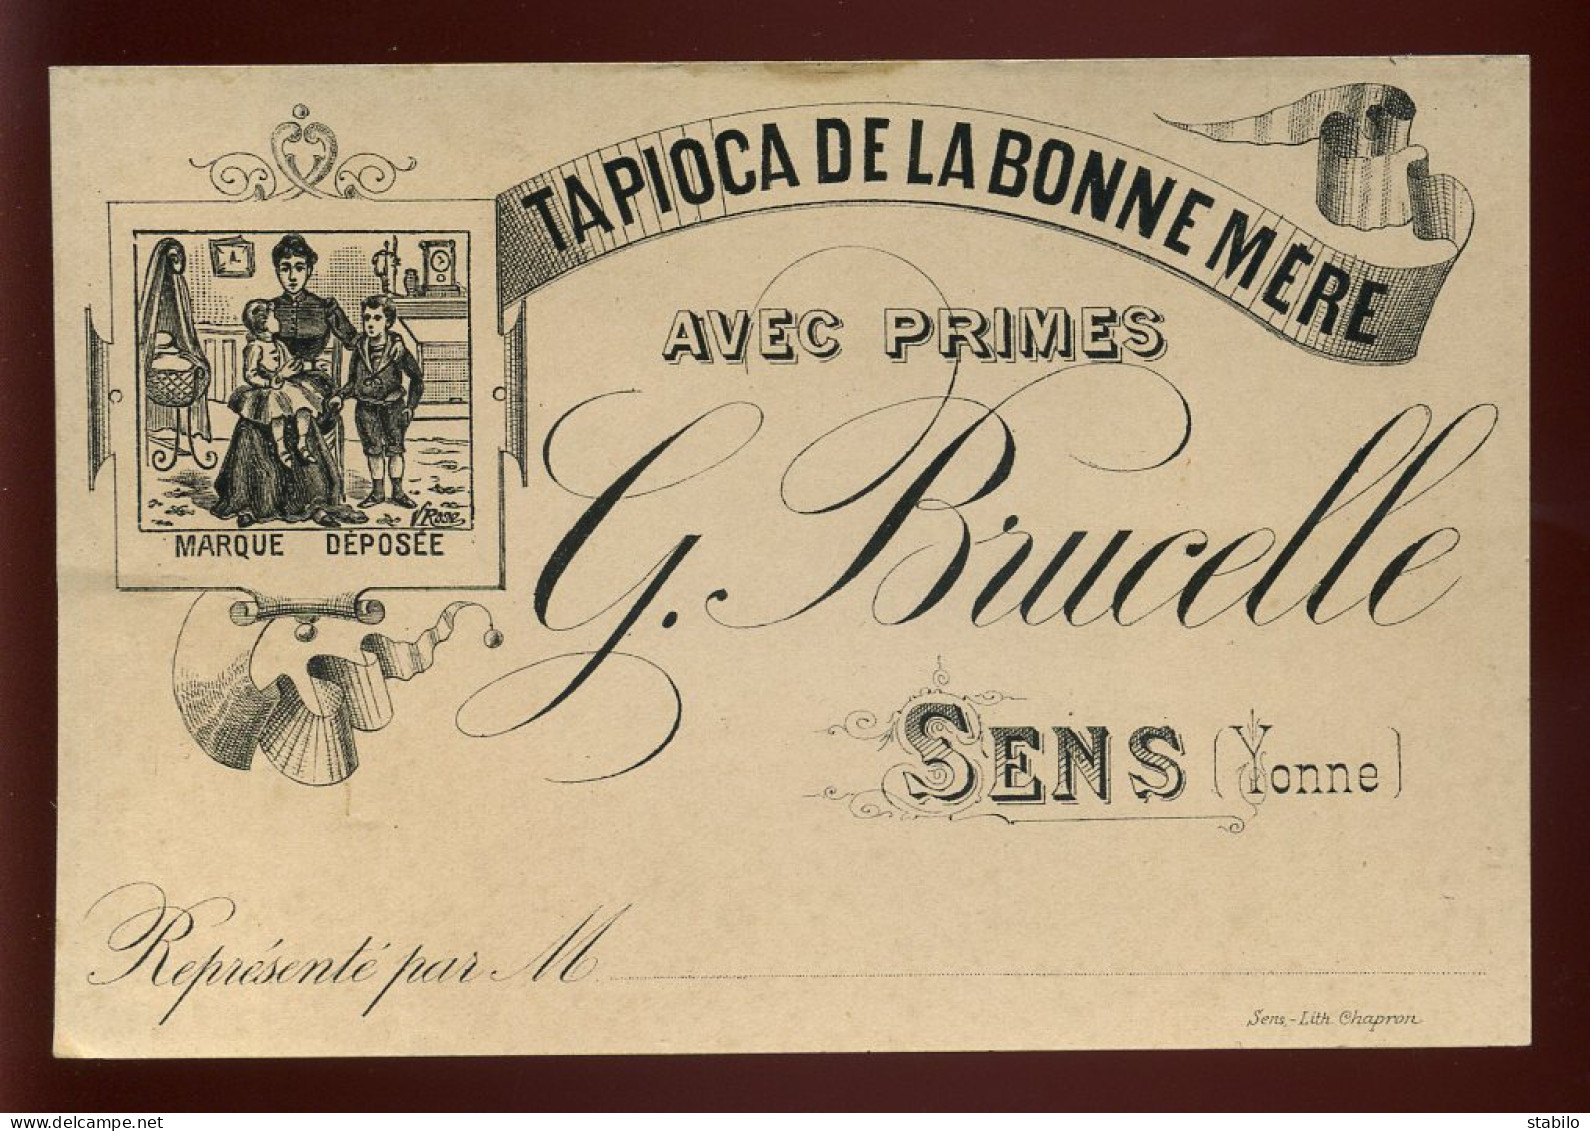 CARTE DE VISITE - SENS - TAPIOCA DE LA BONNE-MERE "G. BRUCELLE" - Cartes De Visite